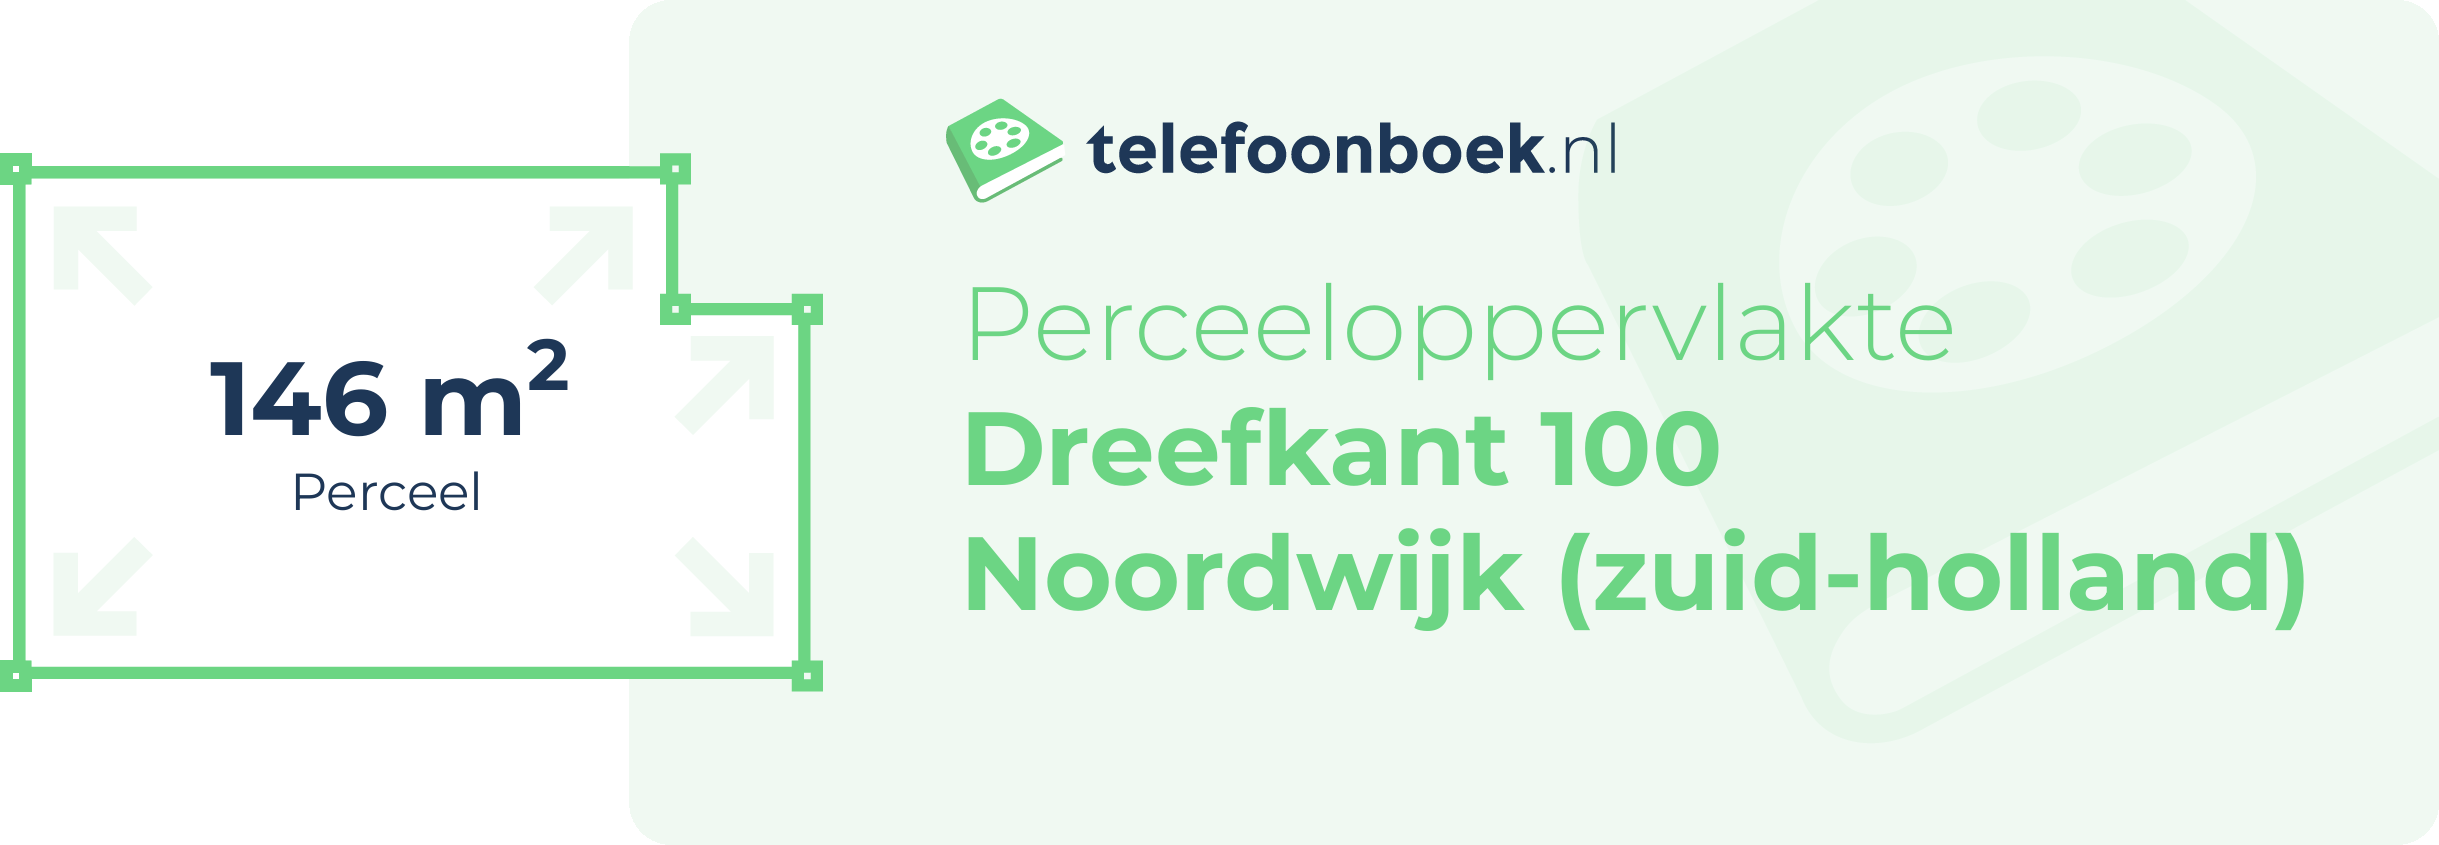 Perceeloppervlakte Dreefkant 100 Noordwijk (Zuid-Holland)